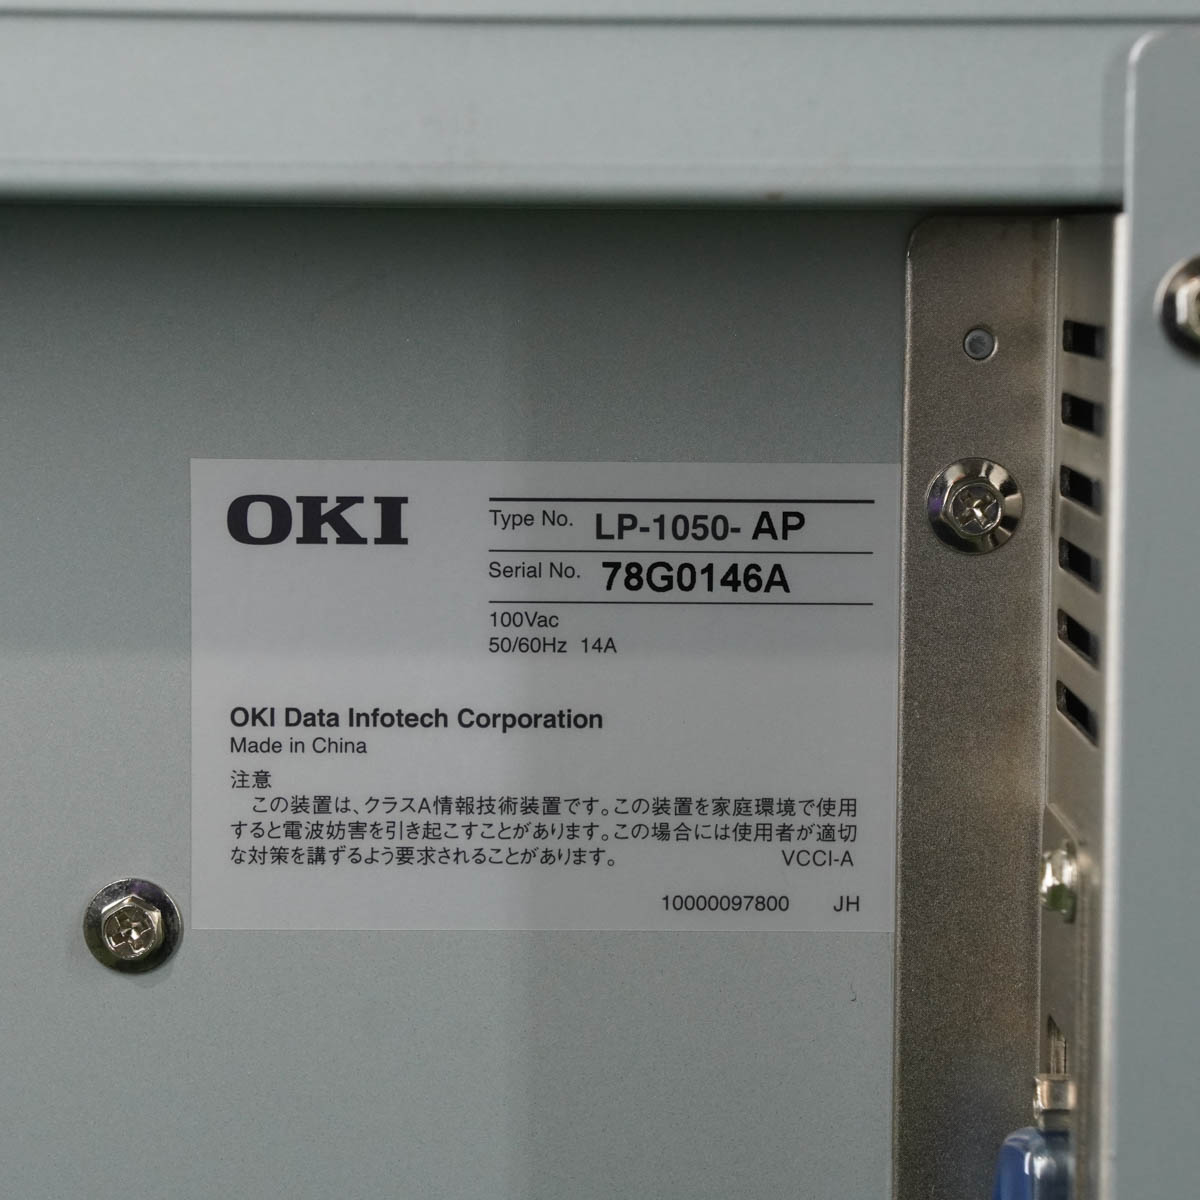 [PG]USED  カウンター444309 OKI LP-1050-AP 広幅LED複合機・プリンター Teriostar A0 ソフトウェア [04991-0066] - 2